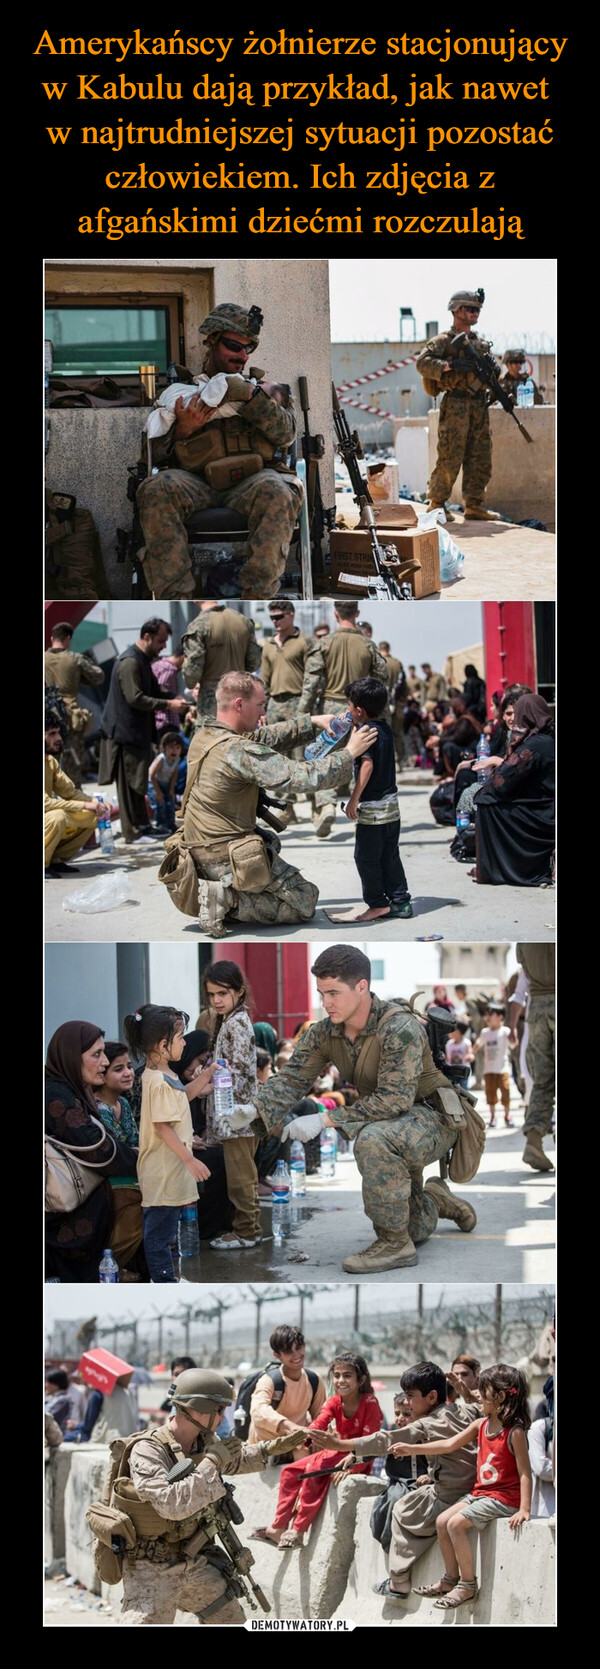 Amerykańscy żołnierze stacjonujący w Kabulu dają przykład, jak nawet 
w najtrudniejszej sytuacji pozostać człowiekiem. Ich zdjęcia z afgańskimi dziećmi rozczulają